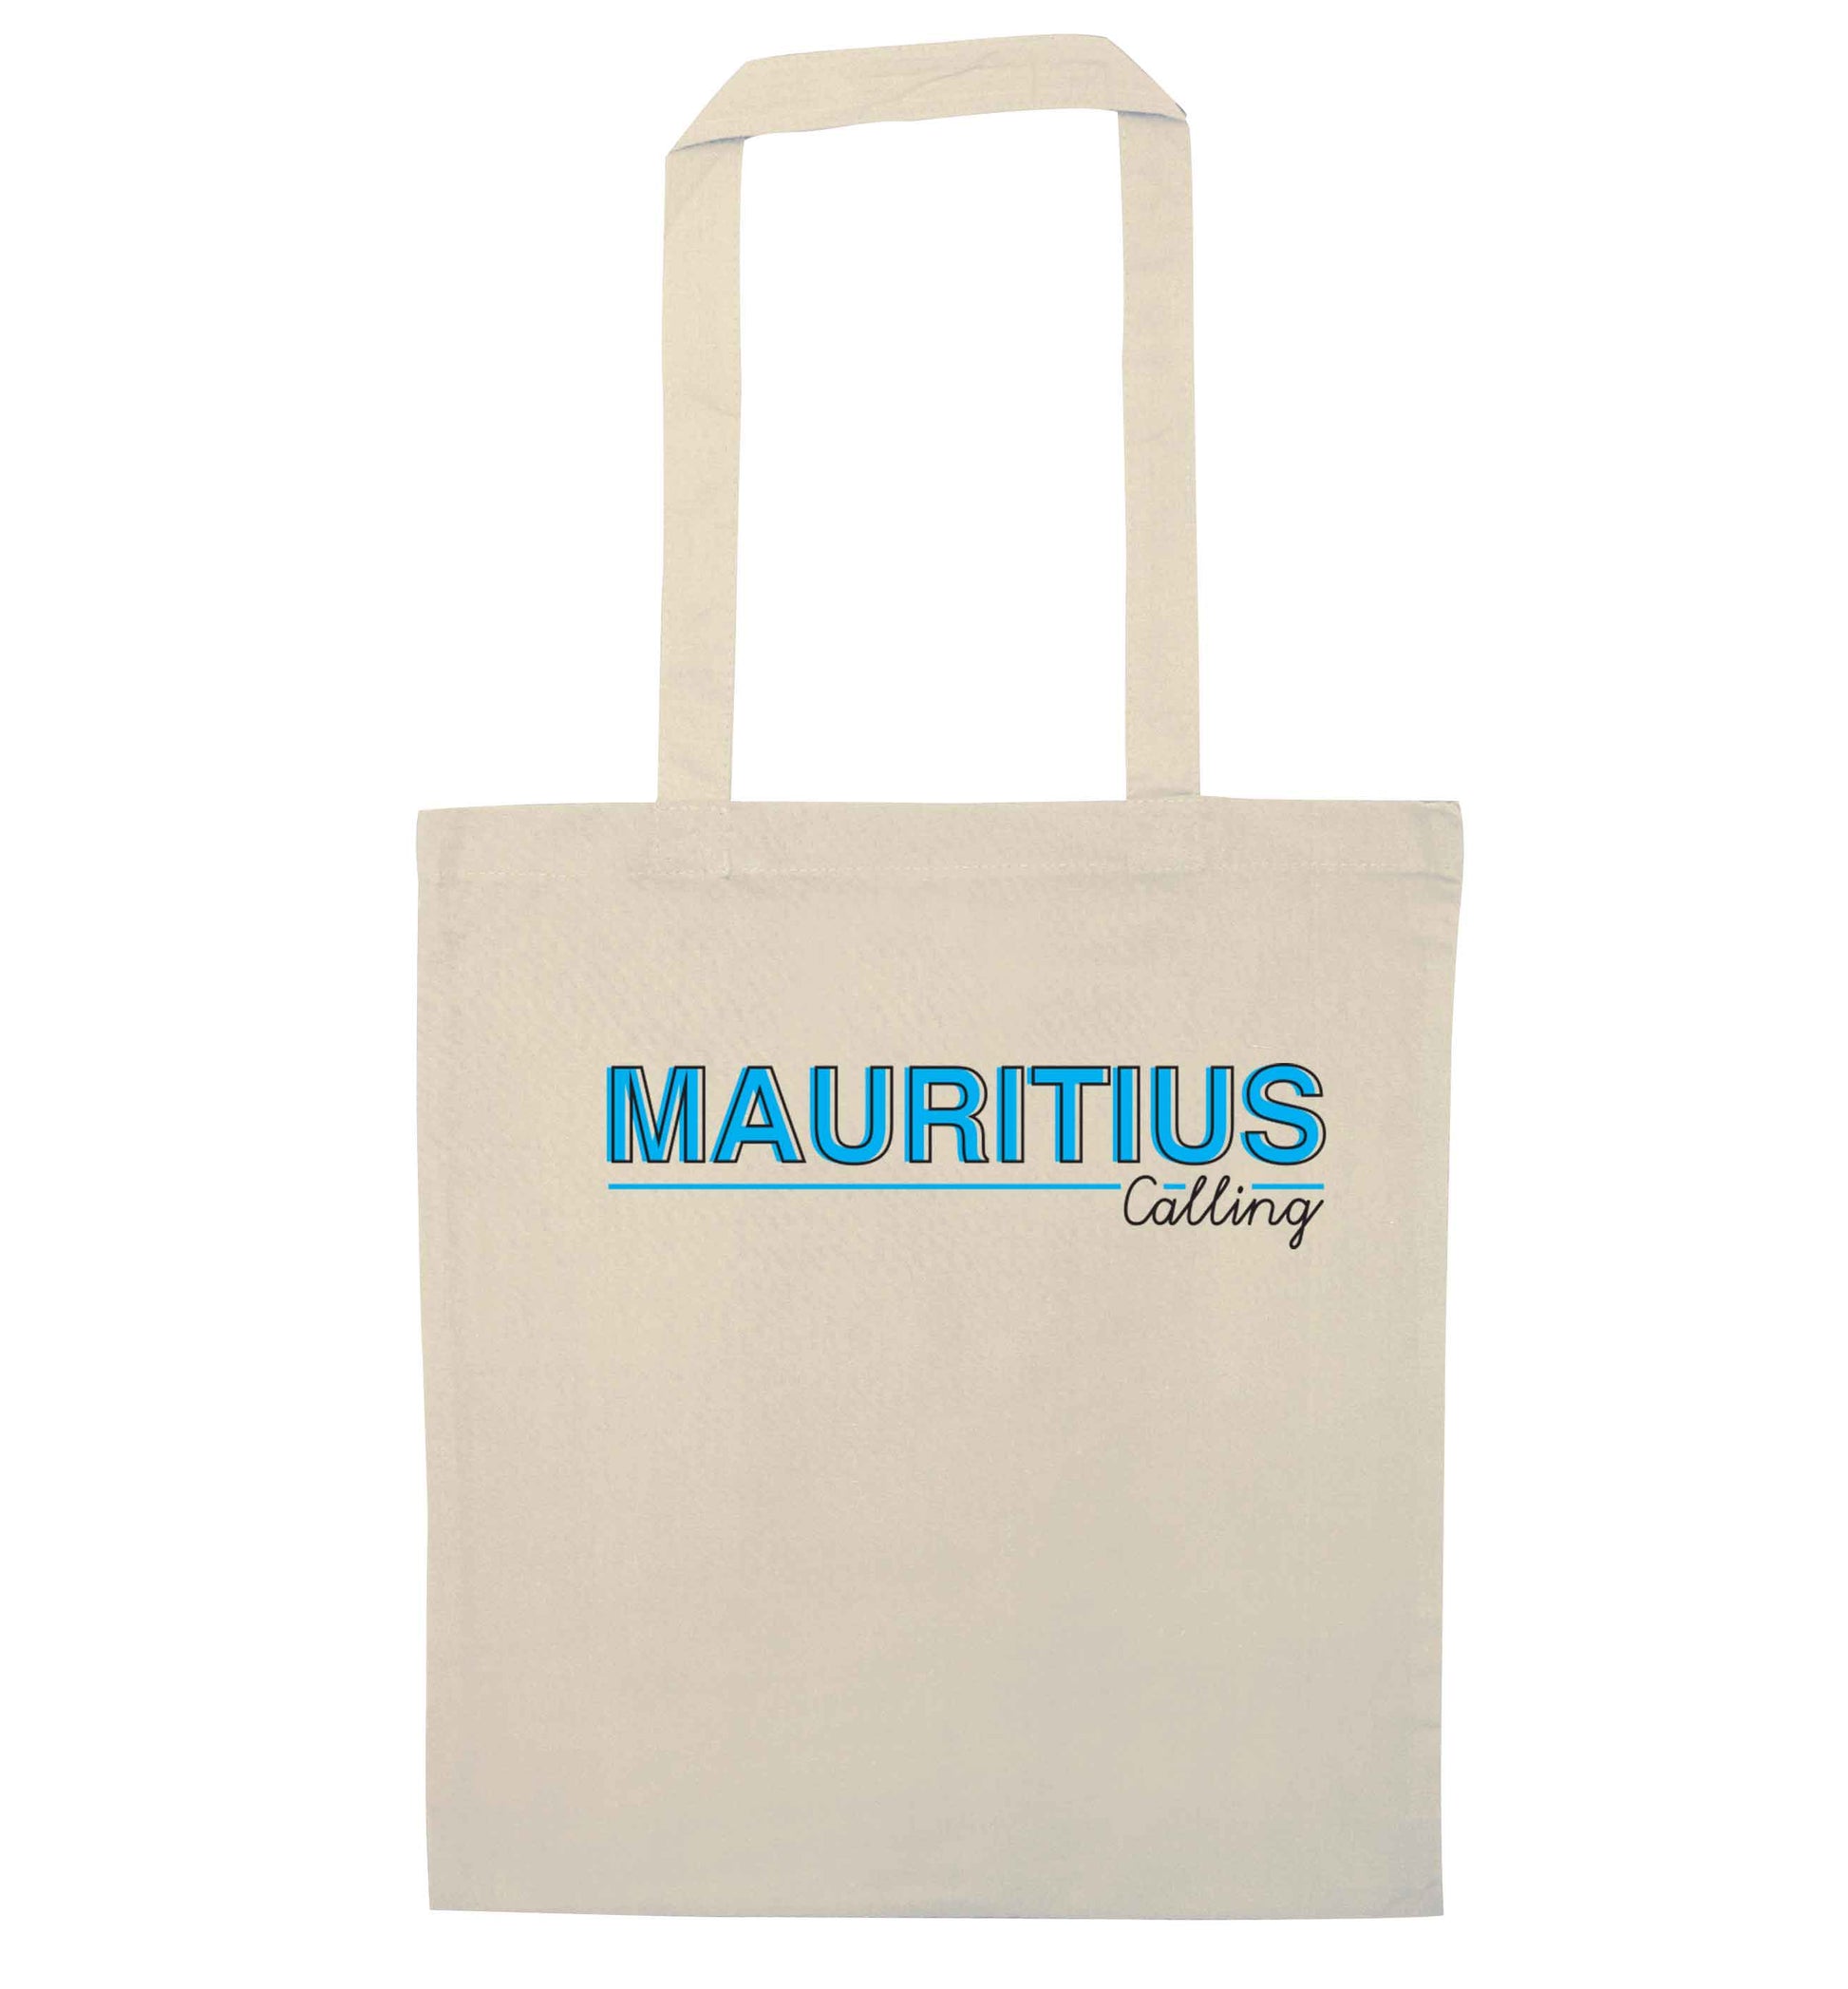 Mauritius calling natural tote bag